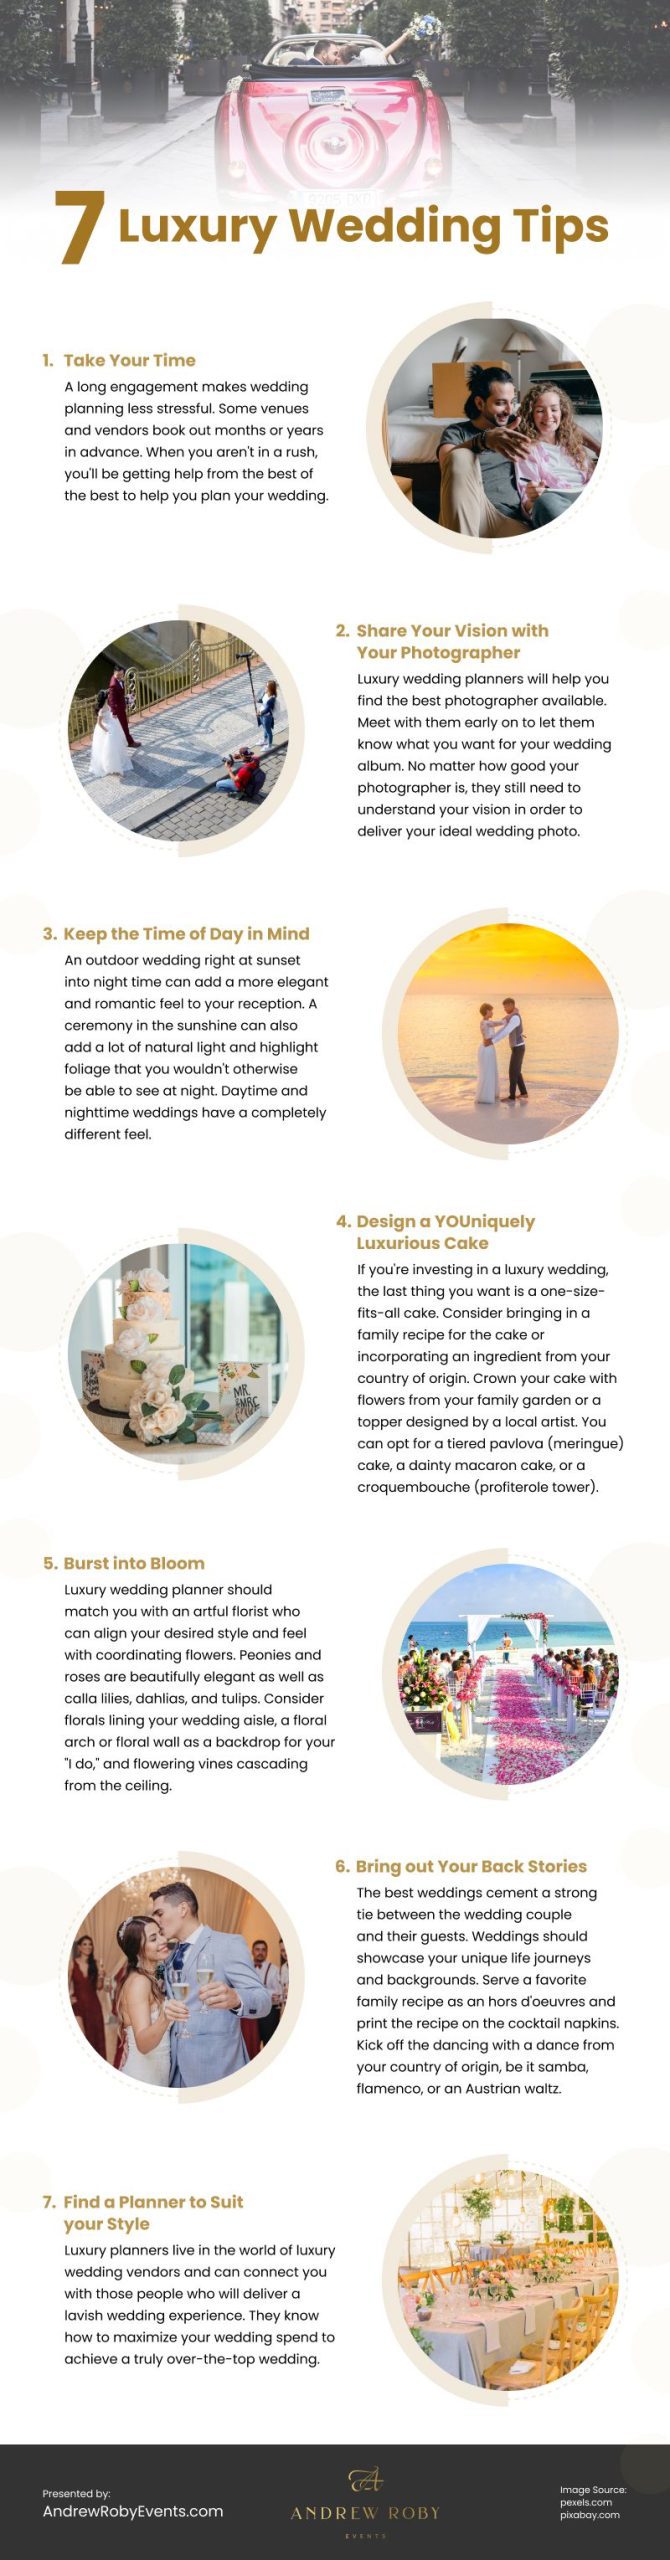 7 Luxury Wedding Tips Infographic